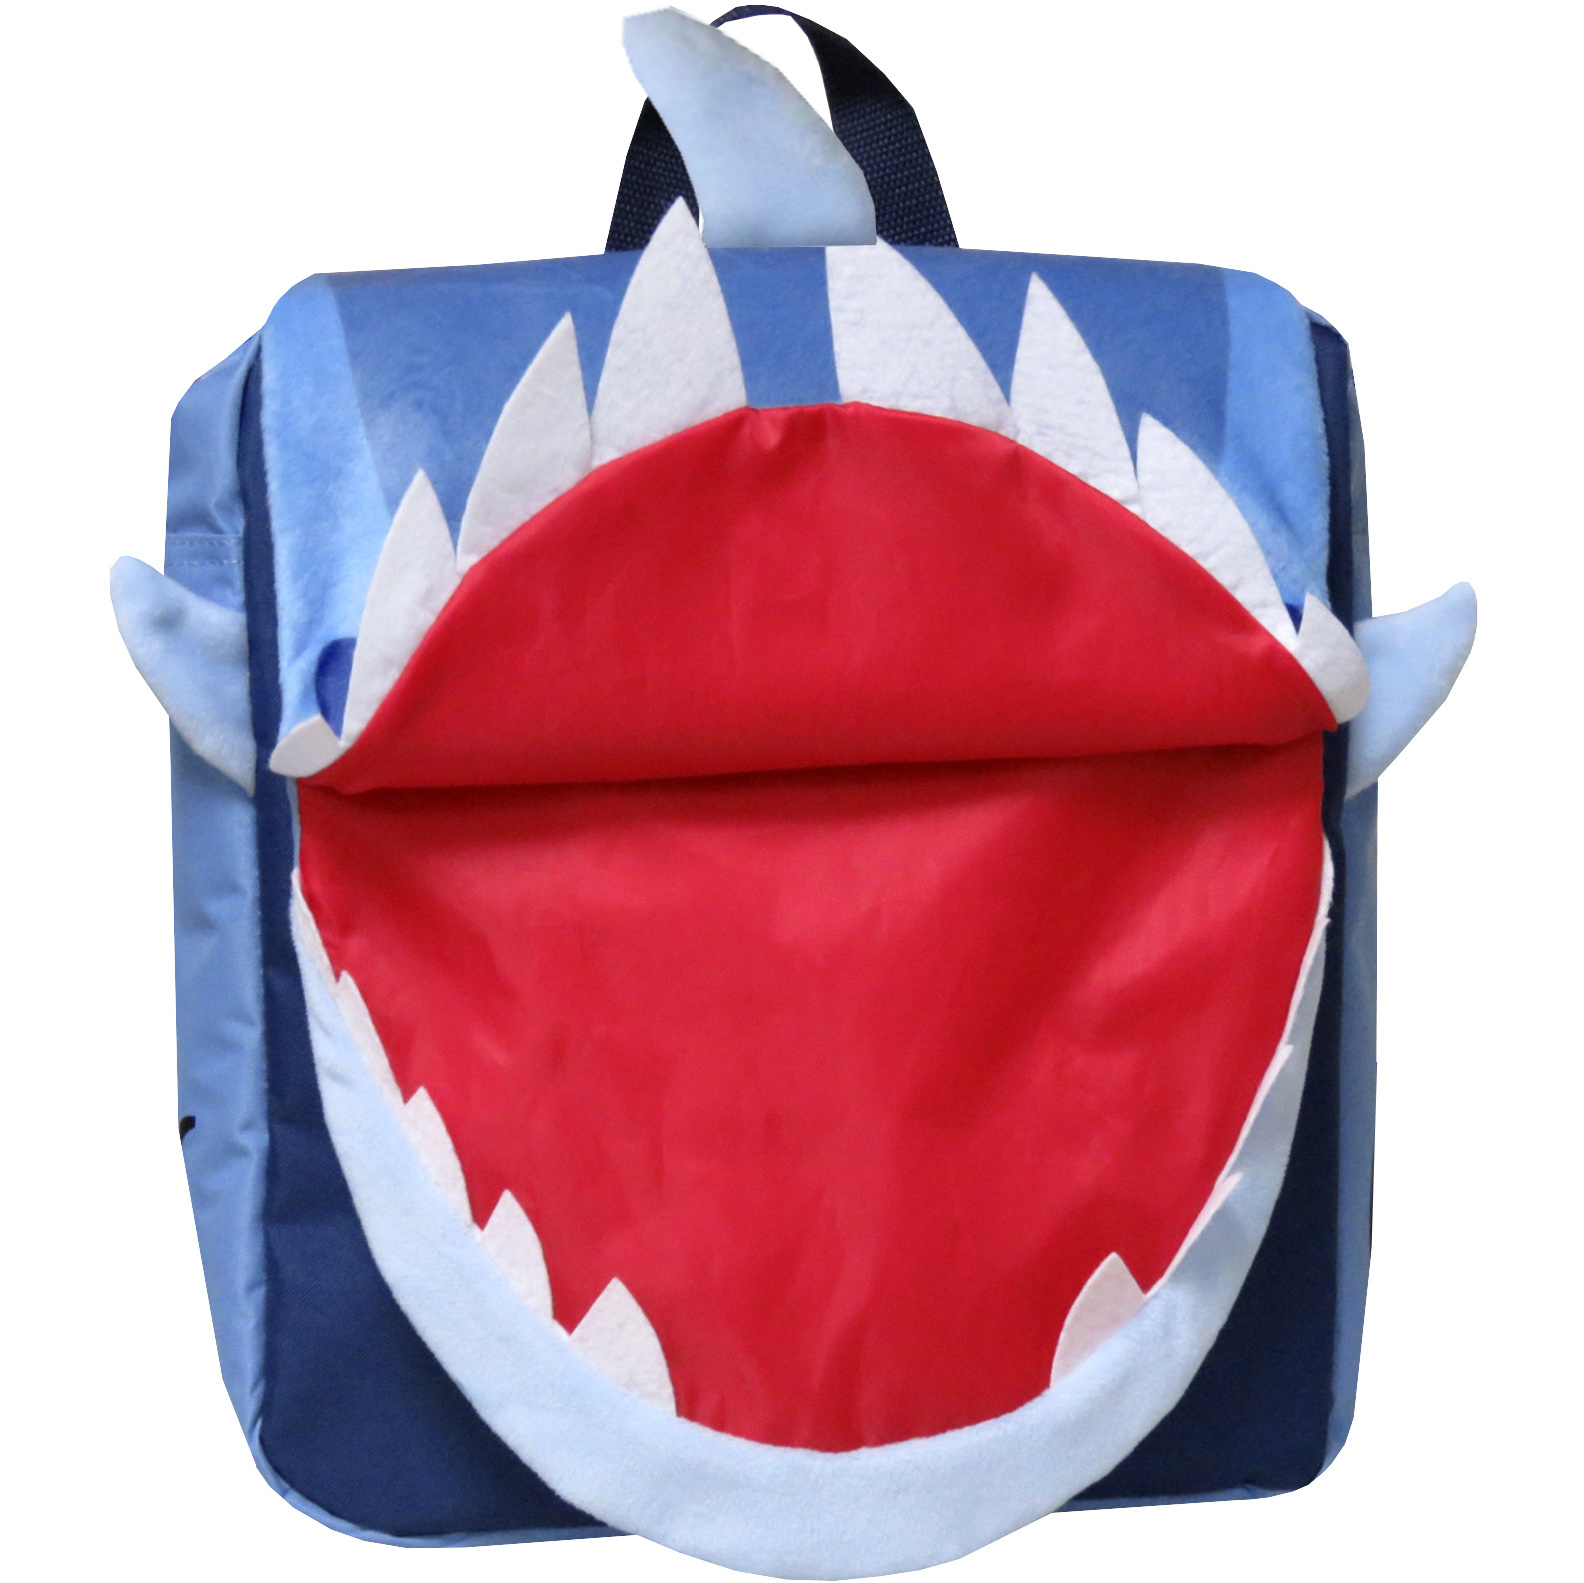 Haai Backpack - 26 x 24 x 10 cm - Blue